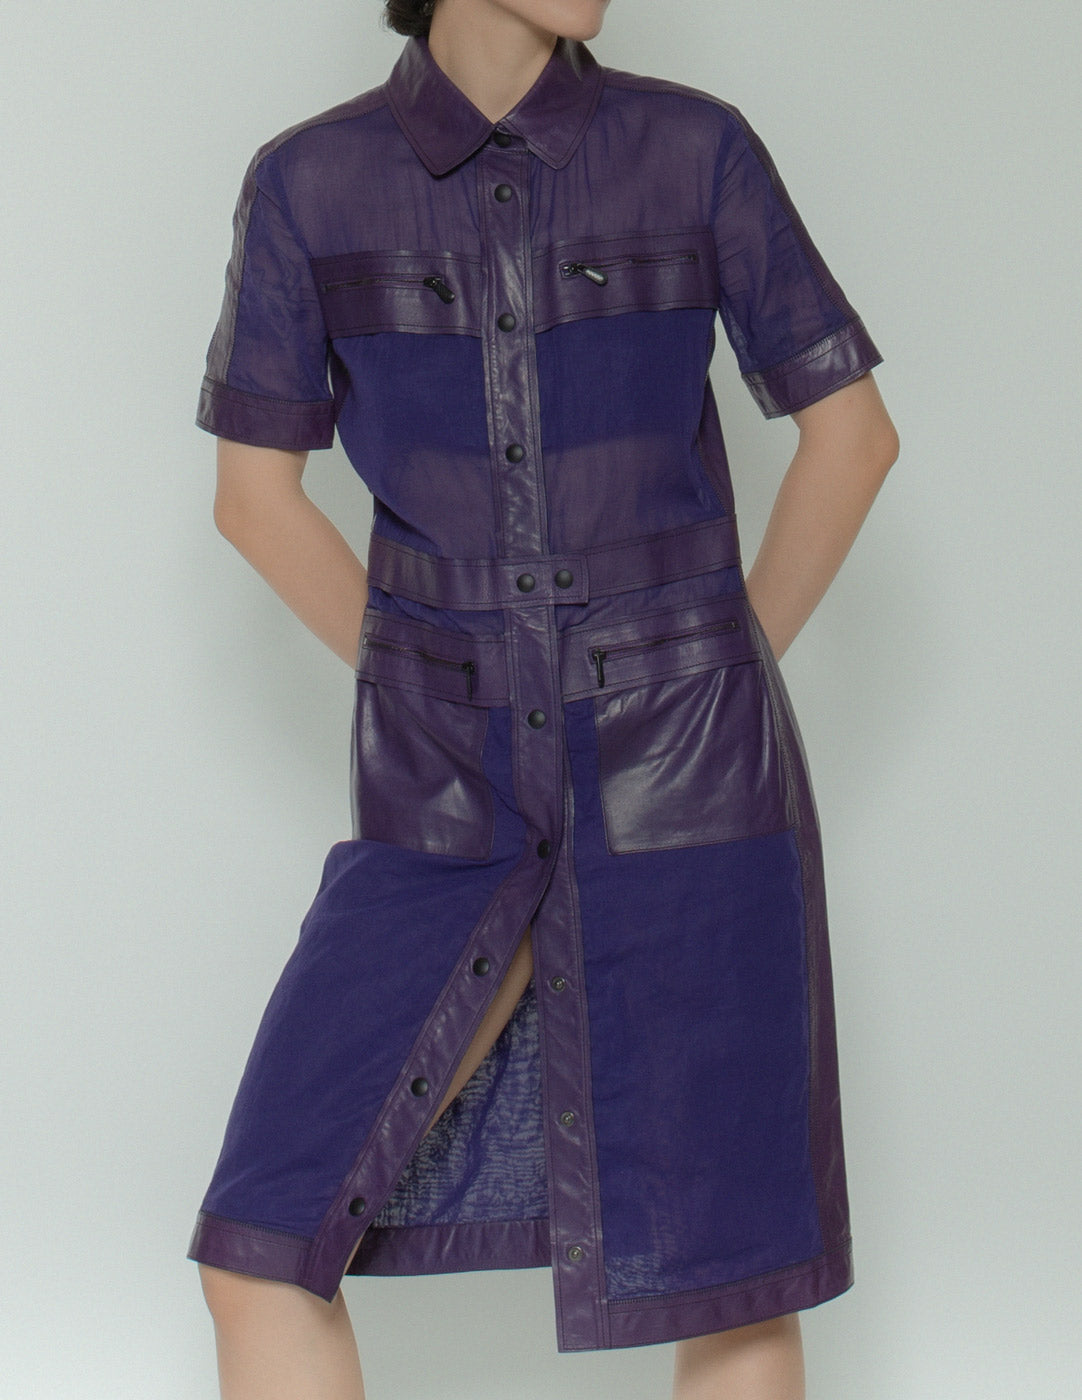 Bottega Veneta purple leather mesh dress front detail